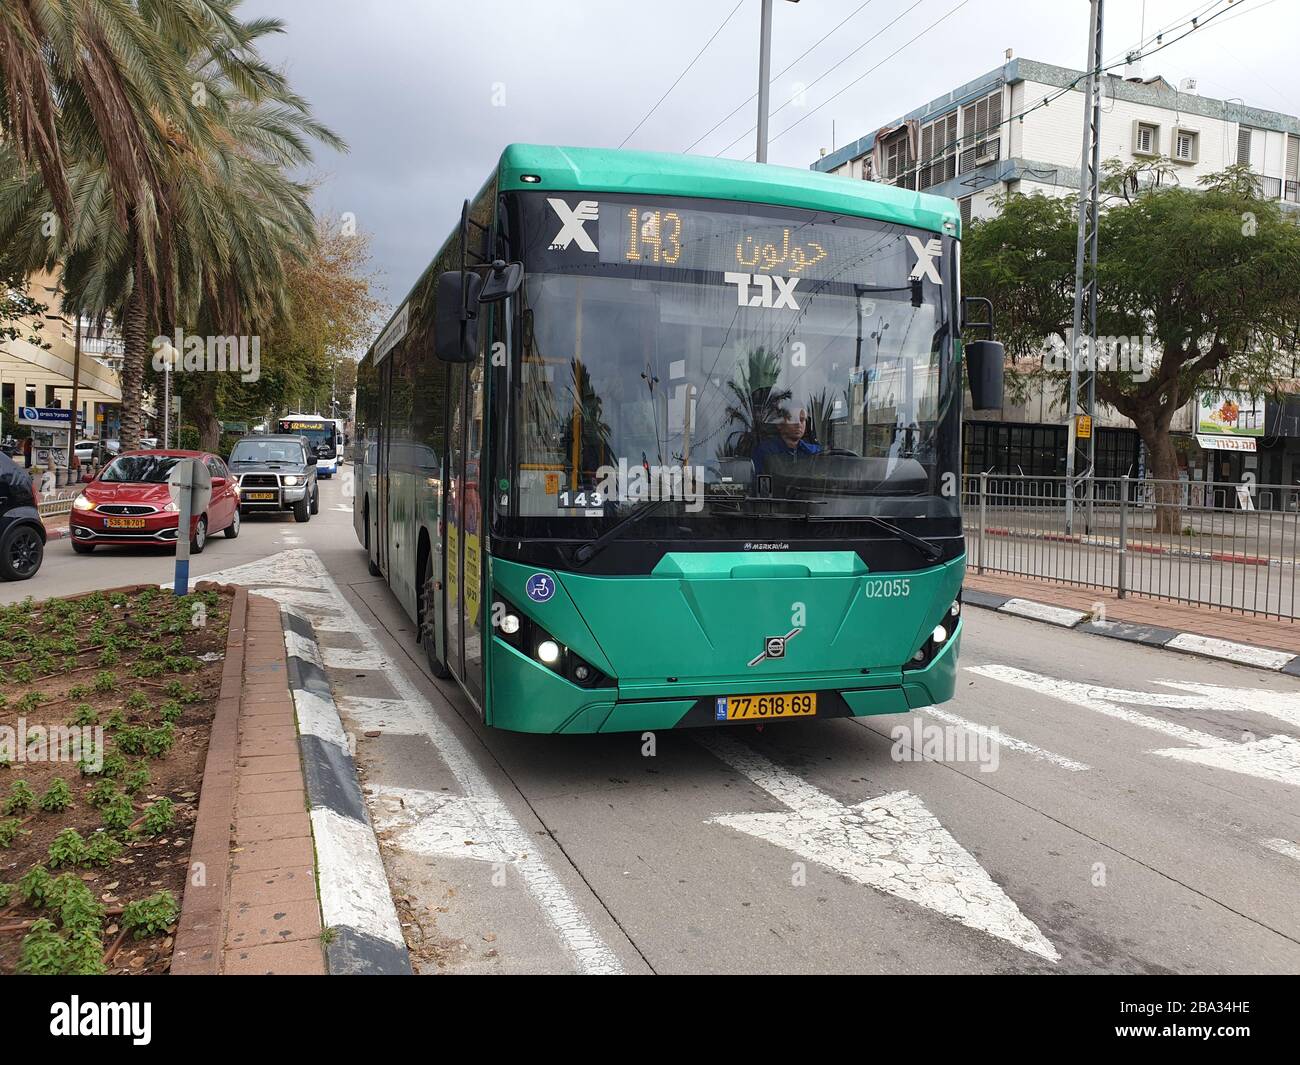 HOLON, ISRAËL. 21 janvier 2020. Bus de passagers Green Egged, route 143, rue Eilat à Holon. Concept de système de transport public israélien Banque D'Images